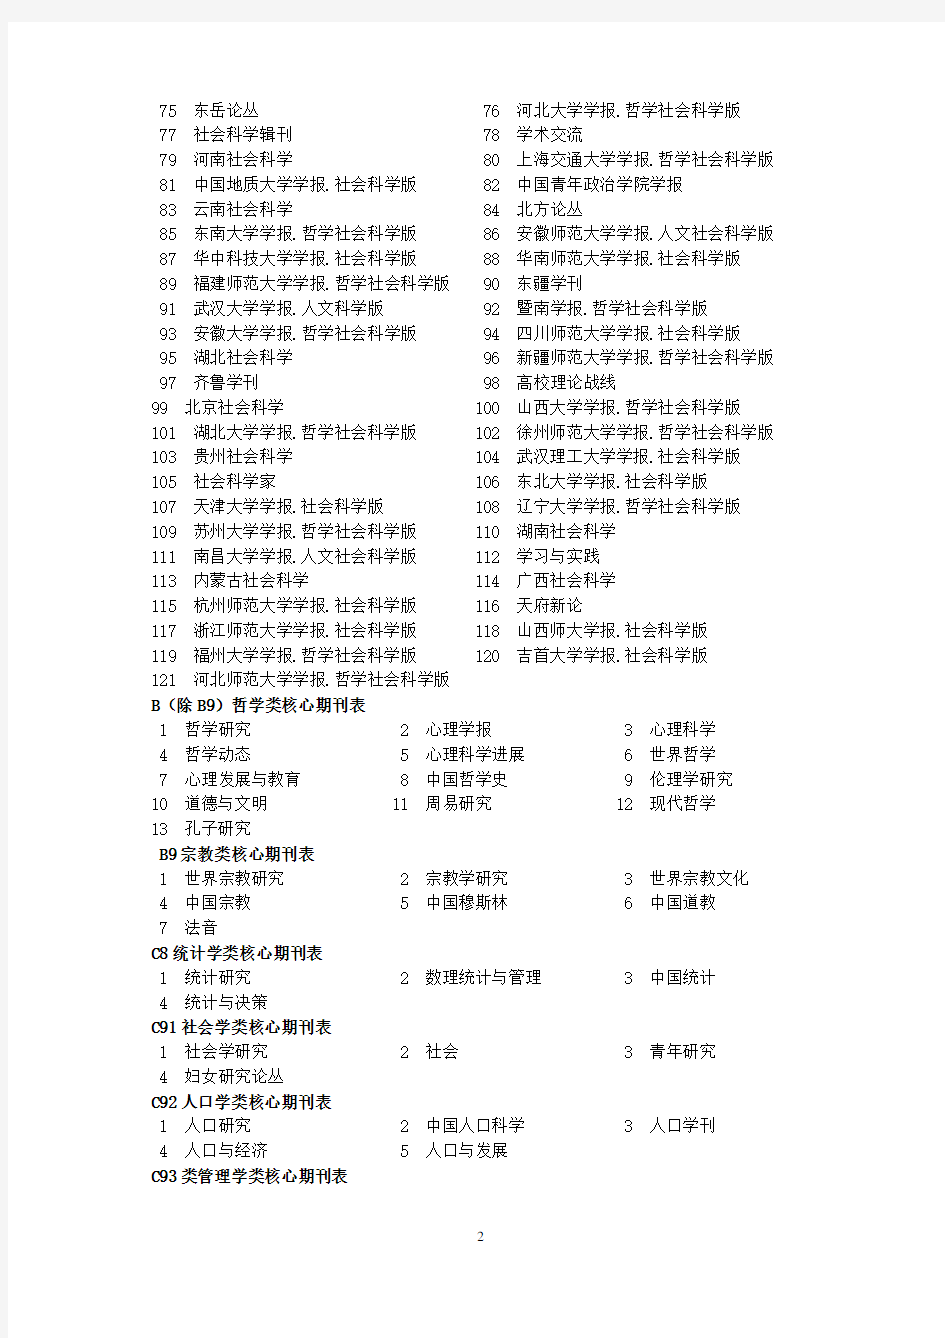 北京大学出版社《中文核心期刊目录总览》(2011年版)